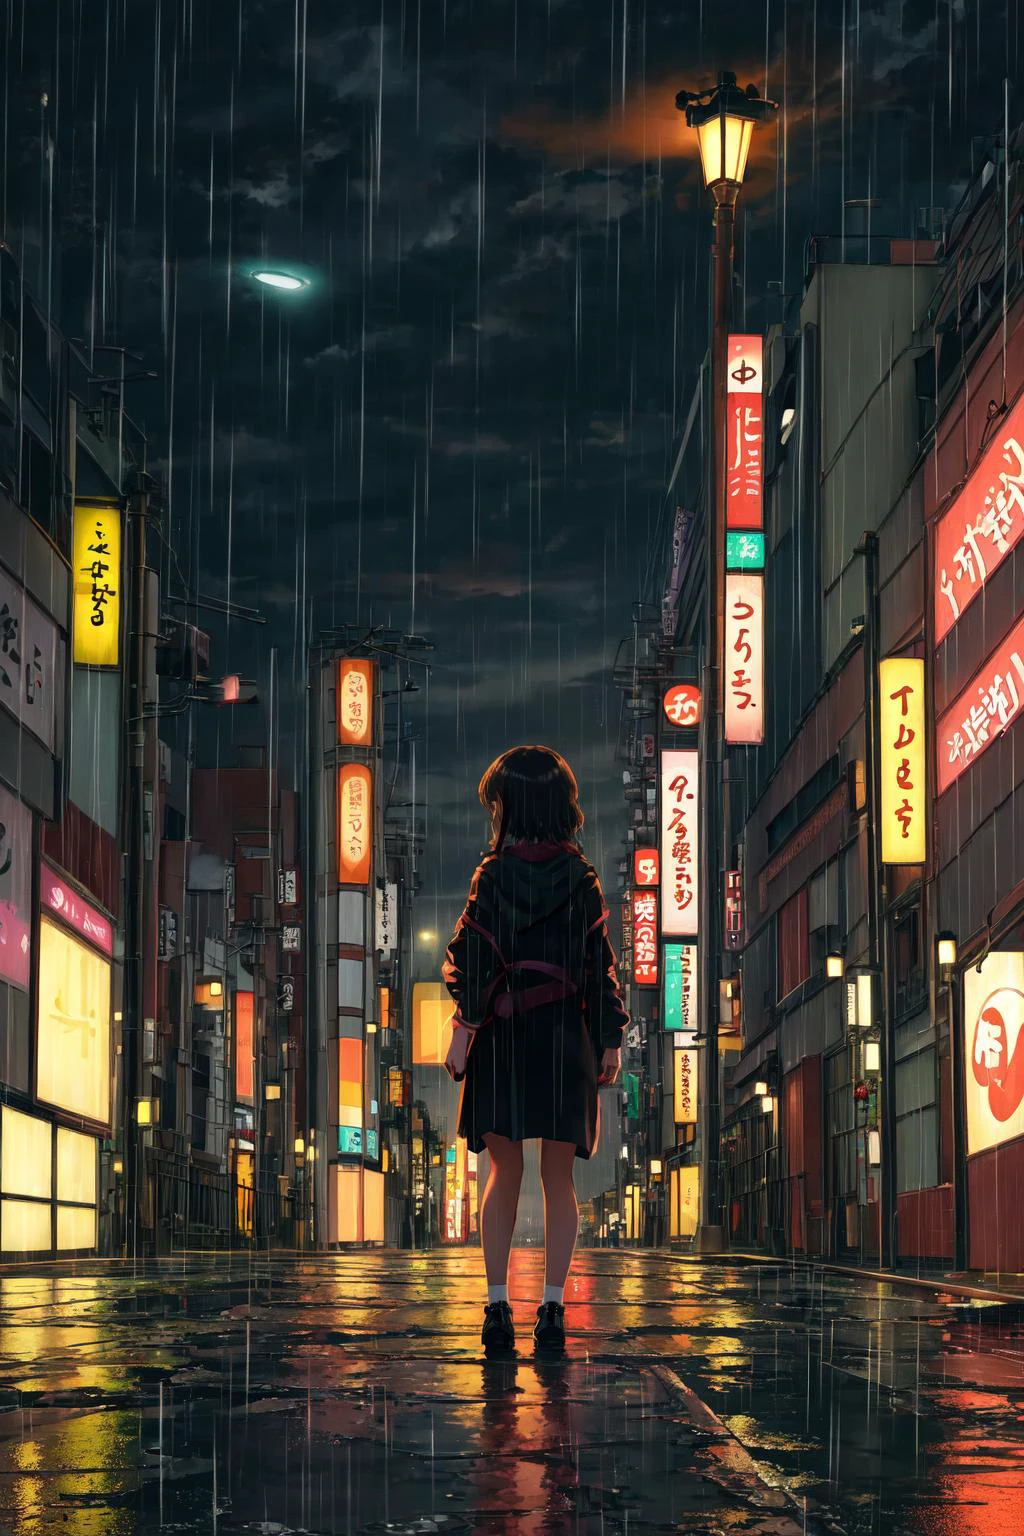 تحفة,أفضل جودة,1فتاة,وحيد,النظر إلى المشاهد,وقت متأخر من الليل, طوكيو, شارع مهجور, منظر بعيد, خلفية, الشعور بالوحدة, مطر, أضواء الشوارع, ضوء ضعيف,